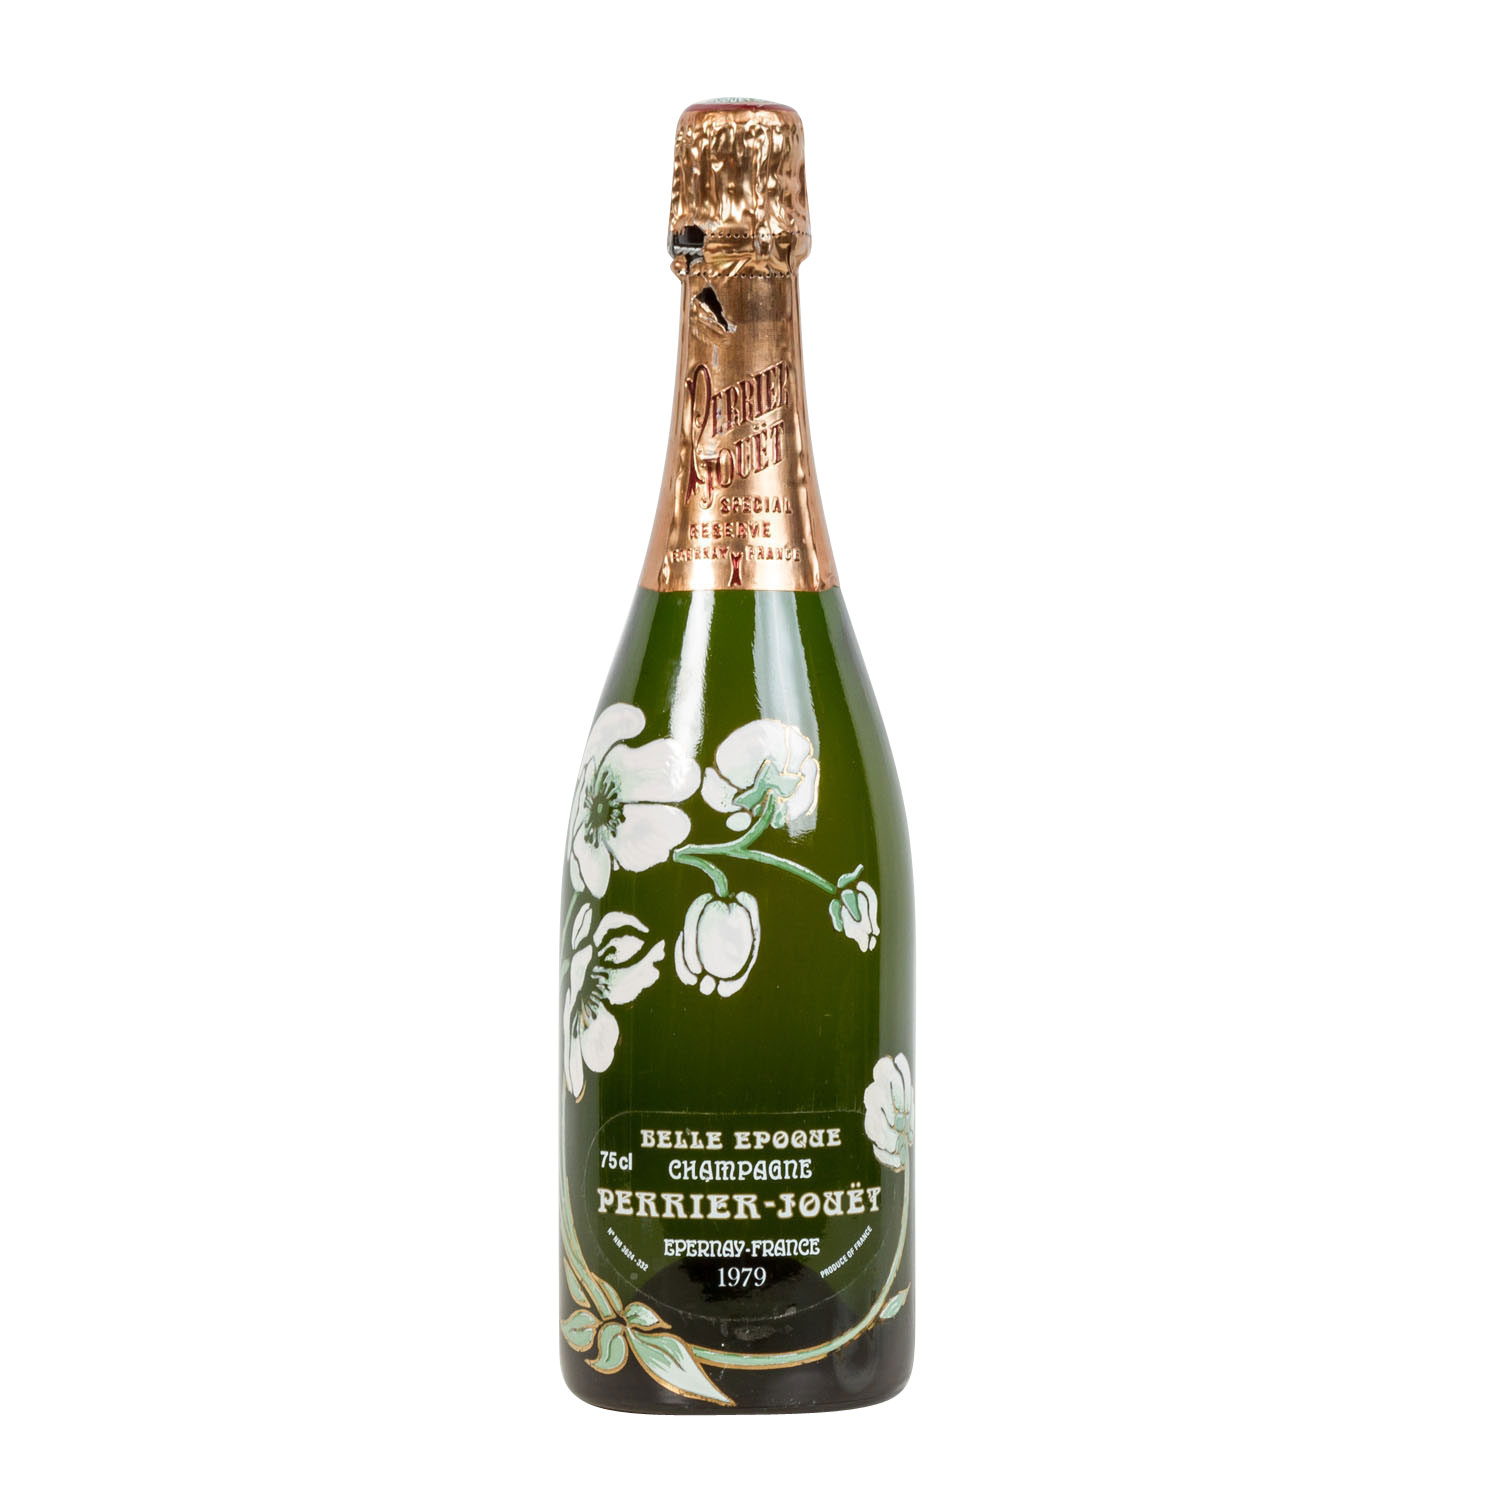 PERRIER-JOUET Champagner 'Belle Epoque' 1979,Champagne, Frankreich, Millésimé, 12% Vol., 750ml,